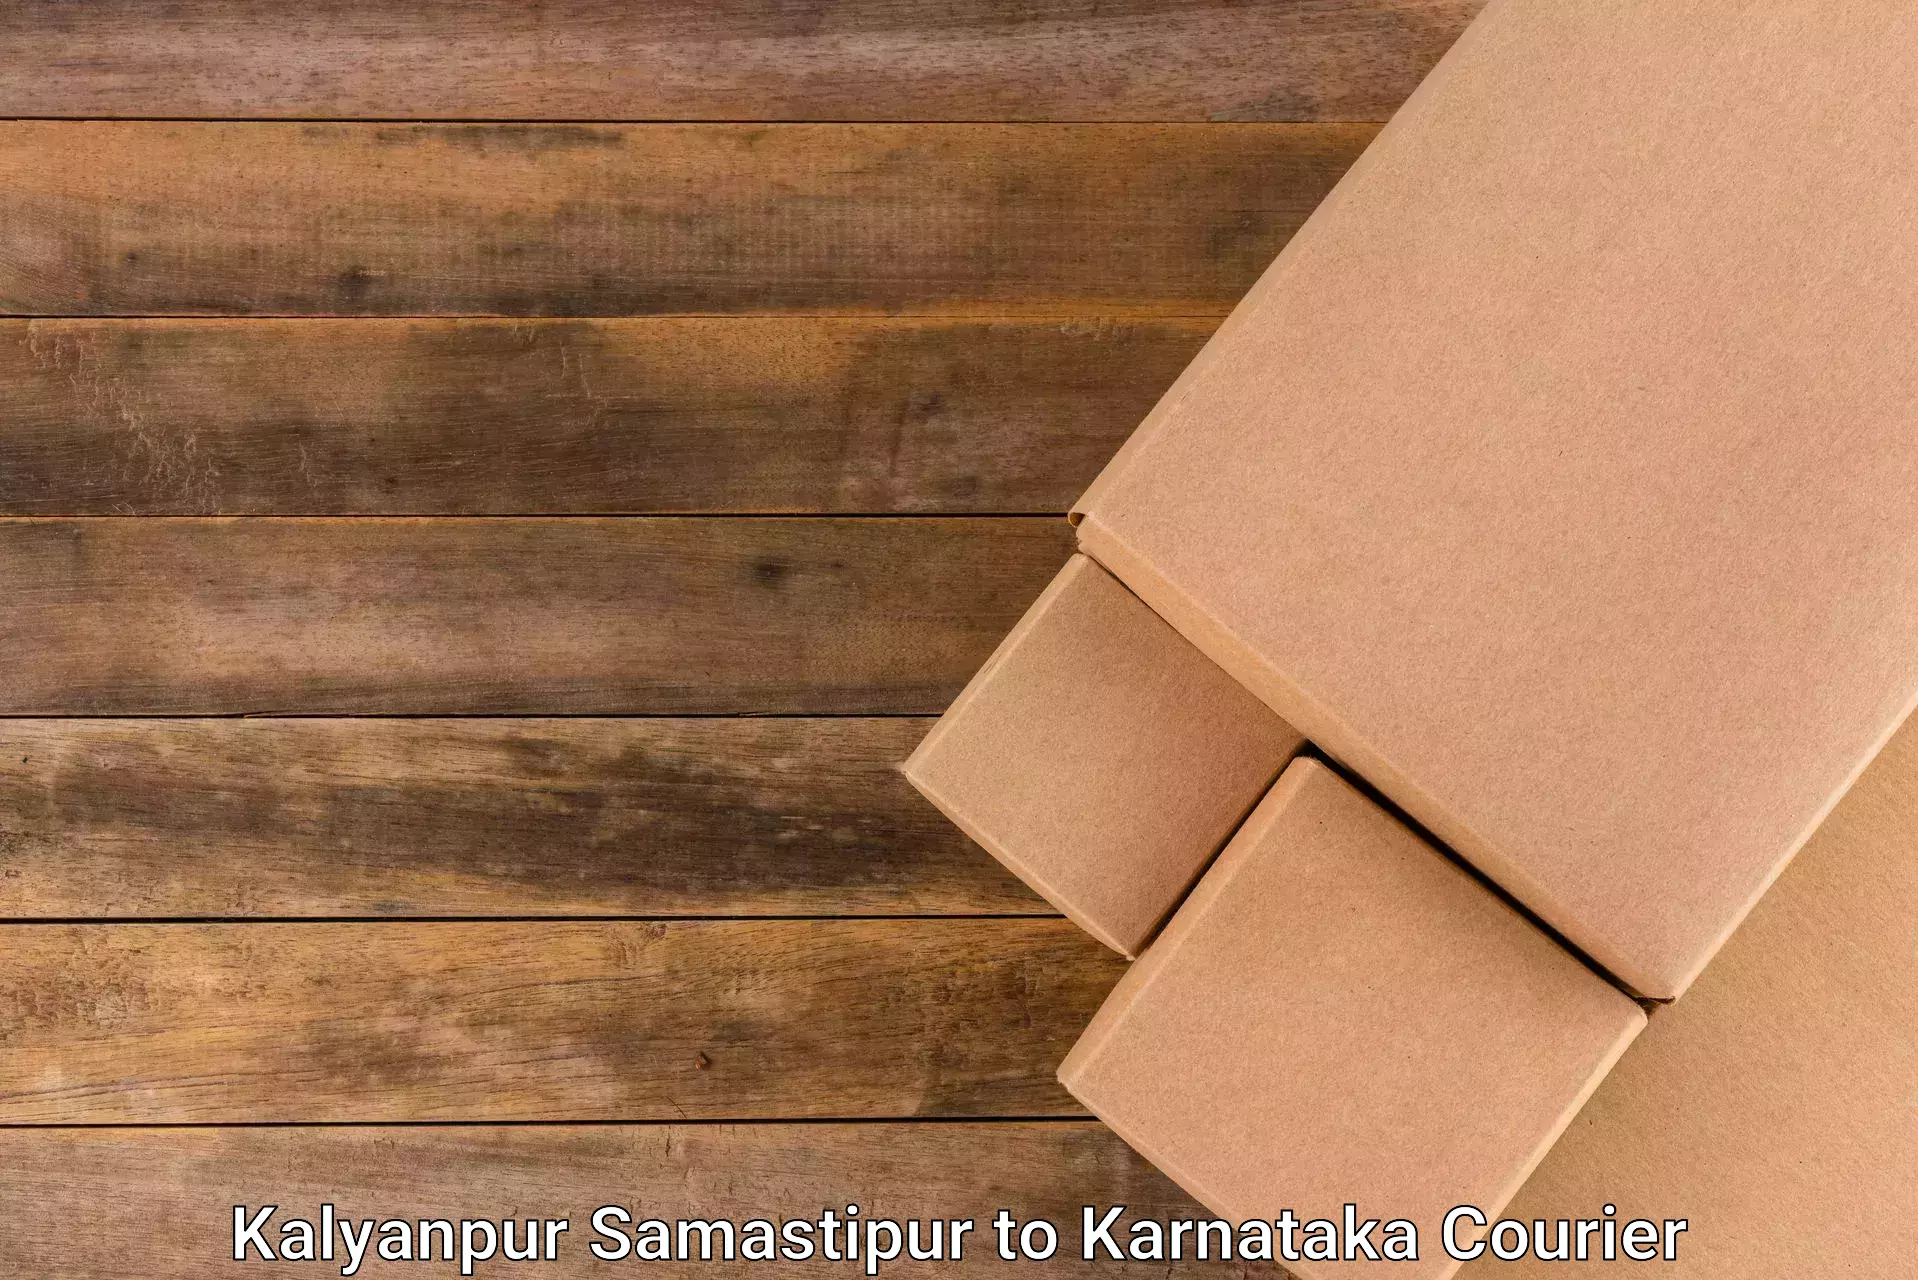 Tailored shipping services Kalyanpur Samastipur to Karnataka